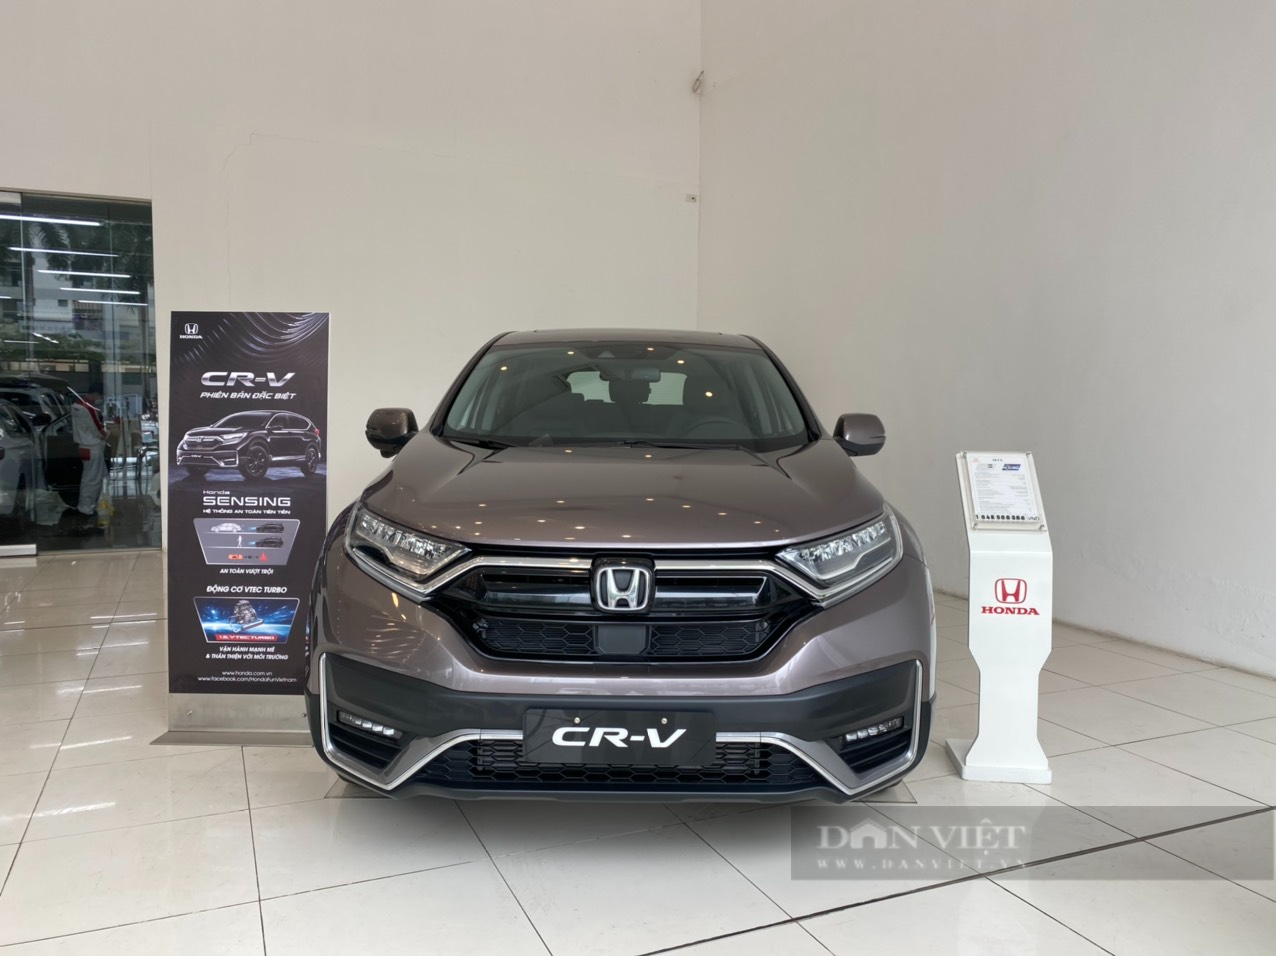 2018 Honda CRV 2017 Honda CRV Honda HRV Xe  Honda png tải về  Miễn phí  trong suốt Xe png Tải về